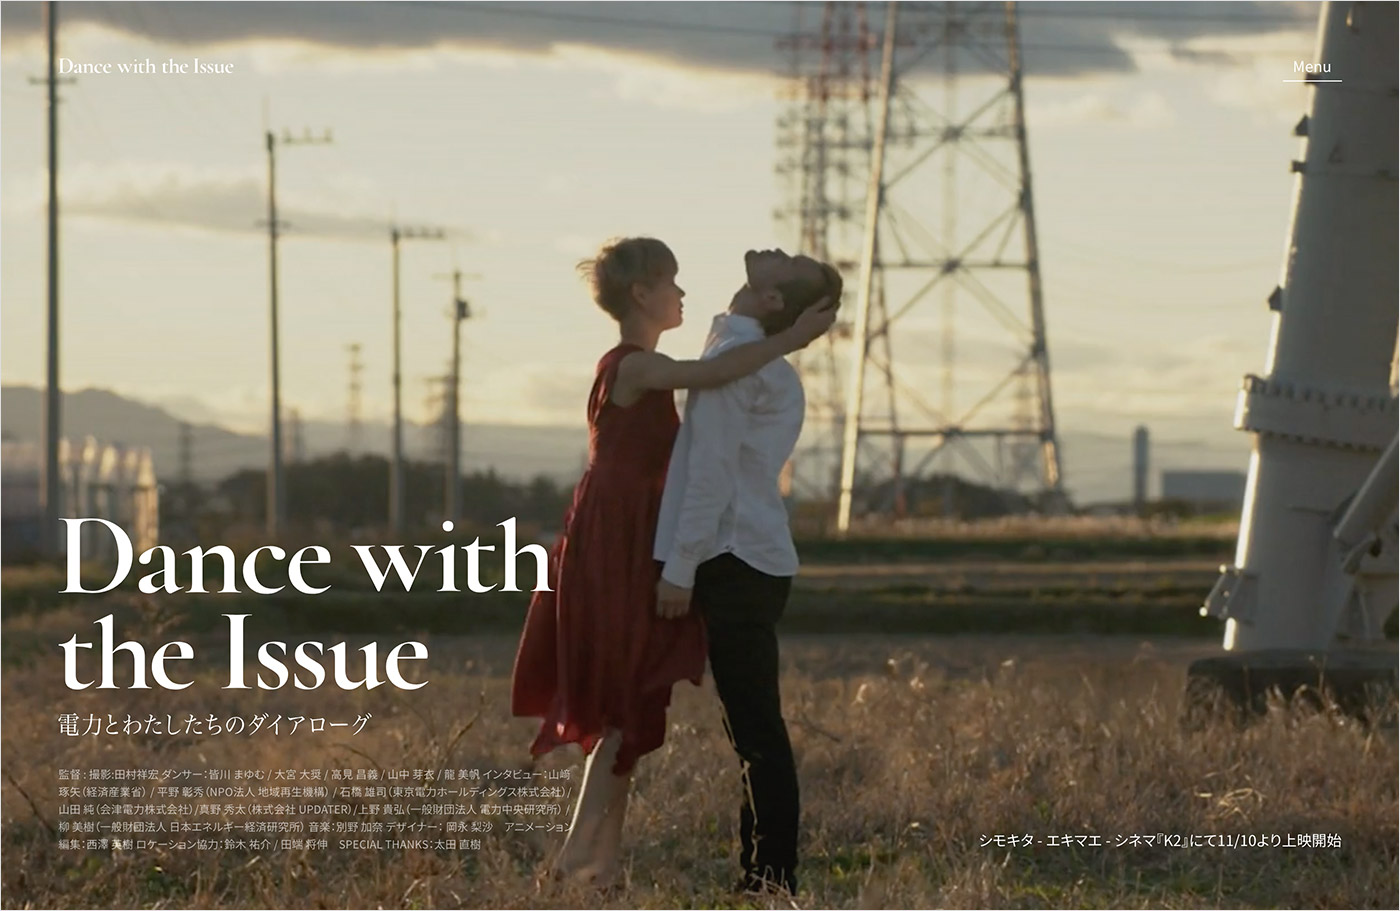 映画「Dance with the Issue」ウェブサイトの画面キャプチャ画像